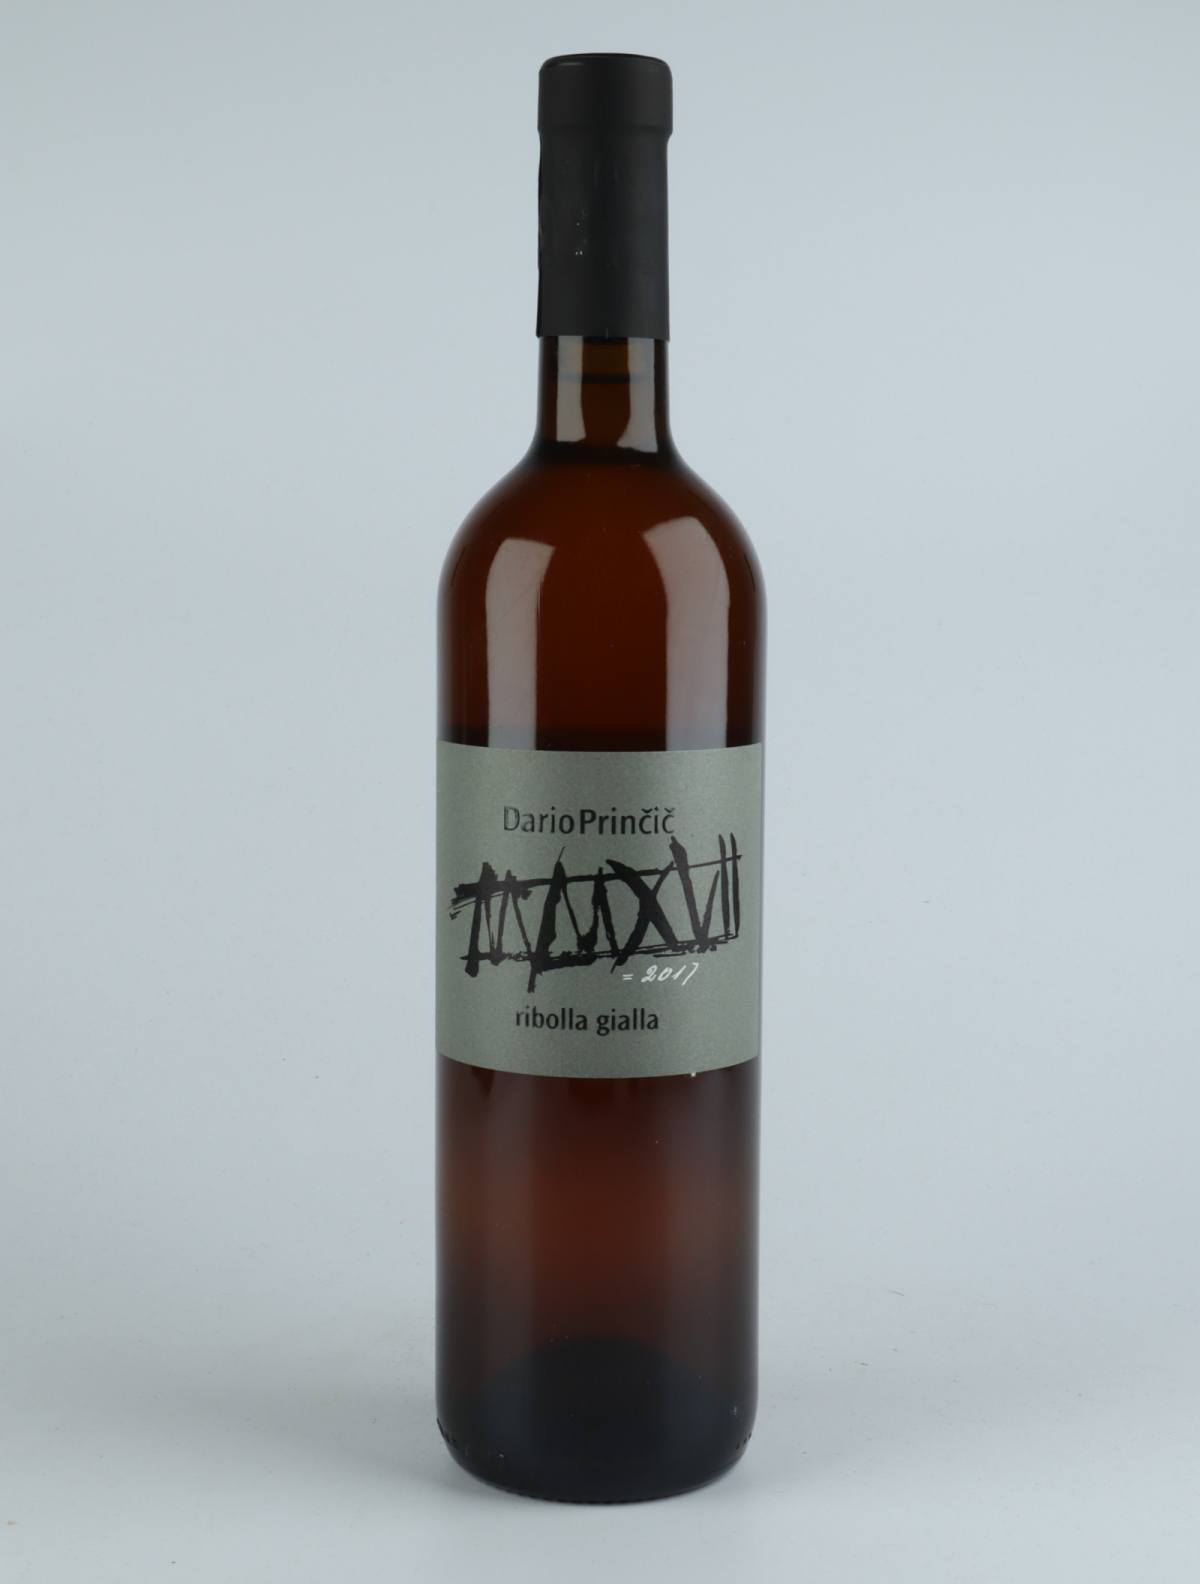 A bottle 2017 Ribolla Gialla Orange wine from Dario Princic, Friuli in Italy